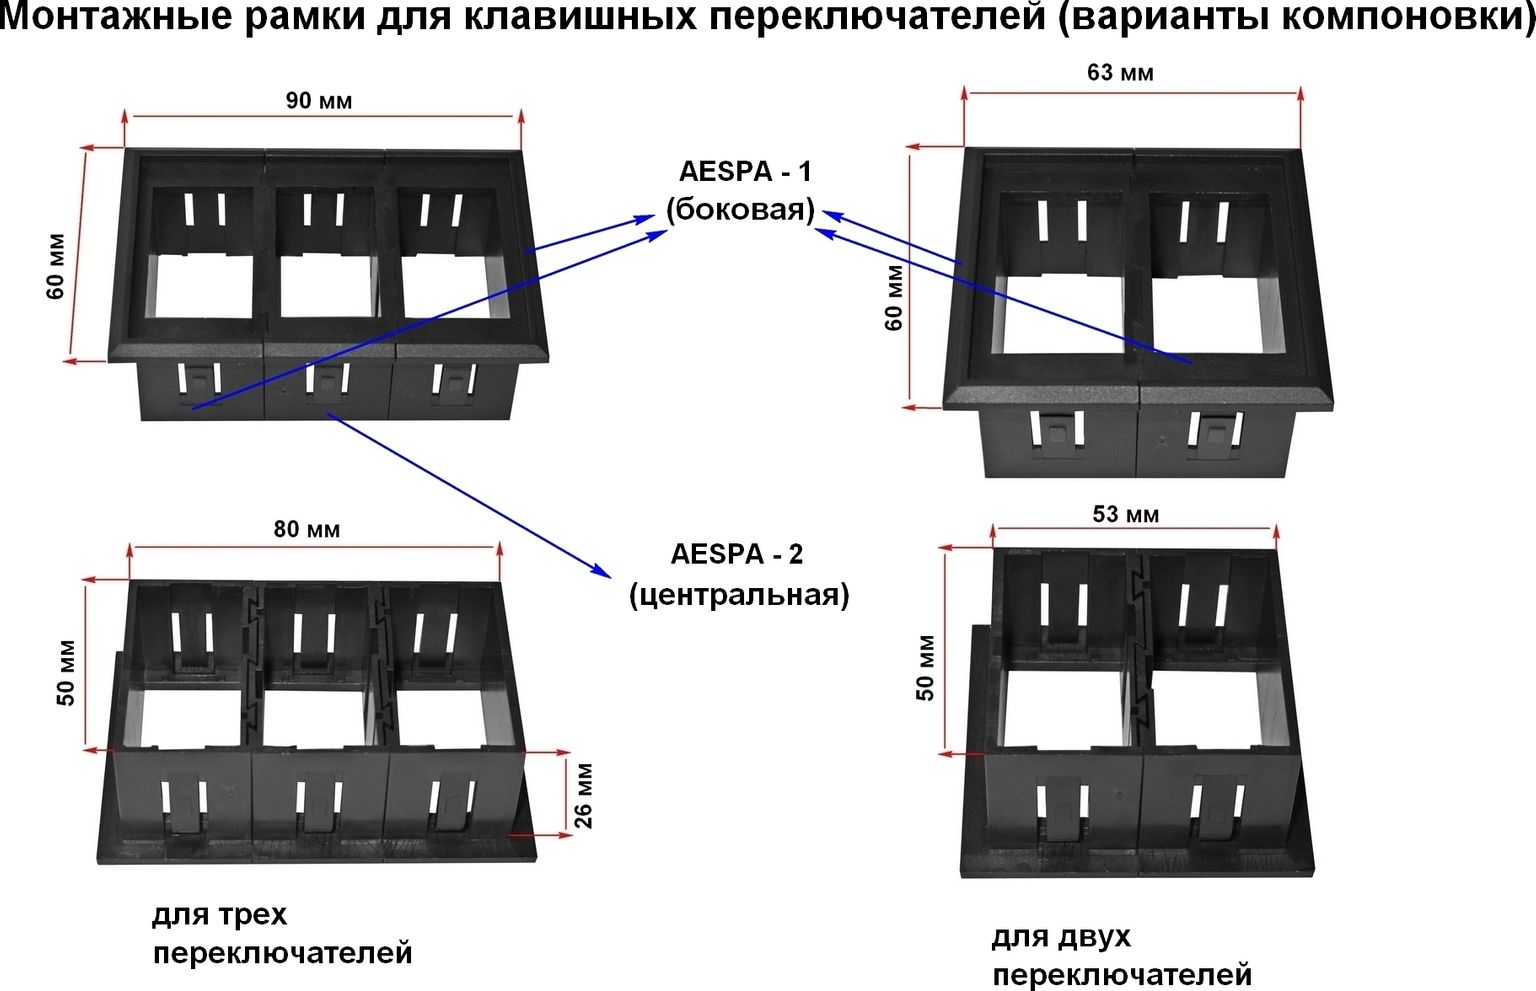 Панель боковая для групповой установки переключателей AES11185Х AESPA1 - фото 2